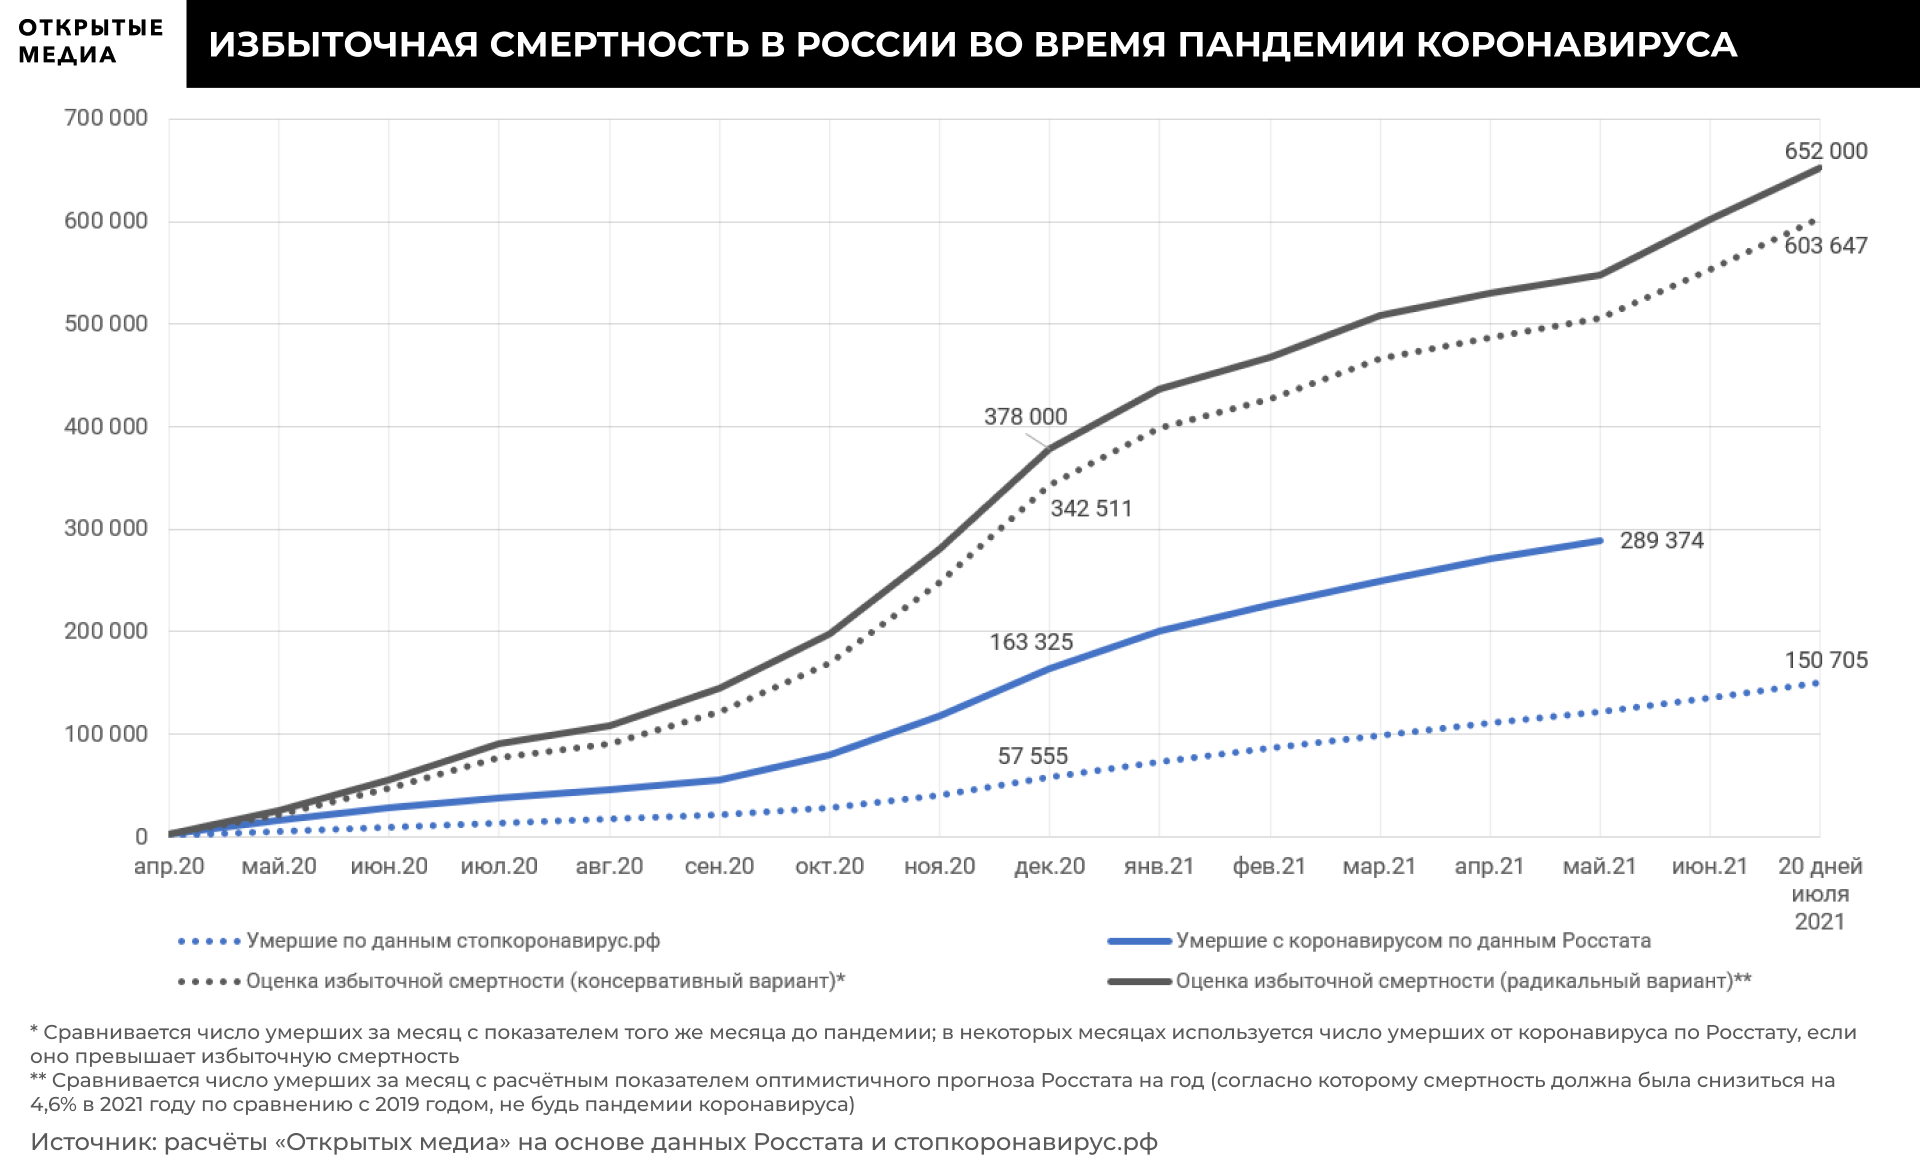 В какие странах большая смертность. Причины смертности в России 2021. Избыточная смертность в России. Смертность в России 2021. График избыточной смертности в России.